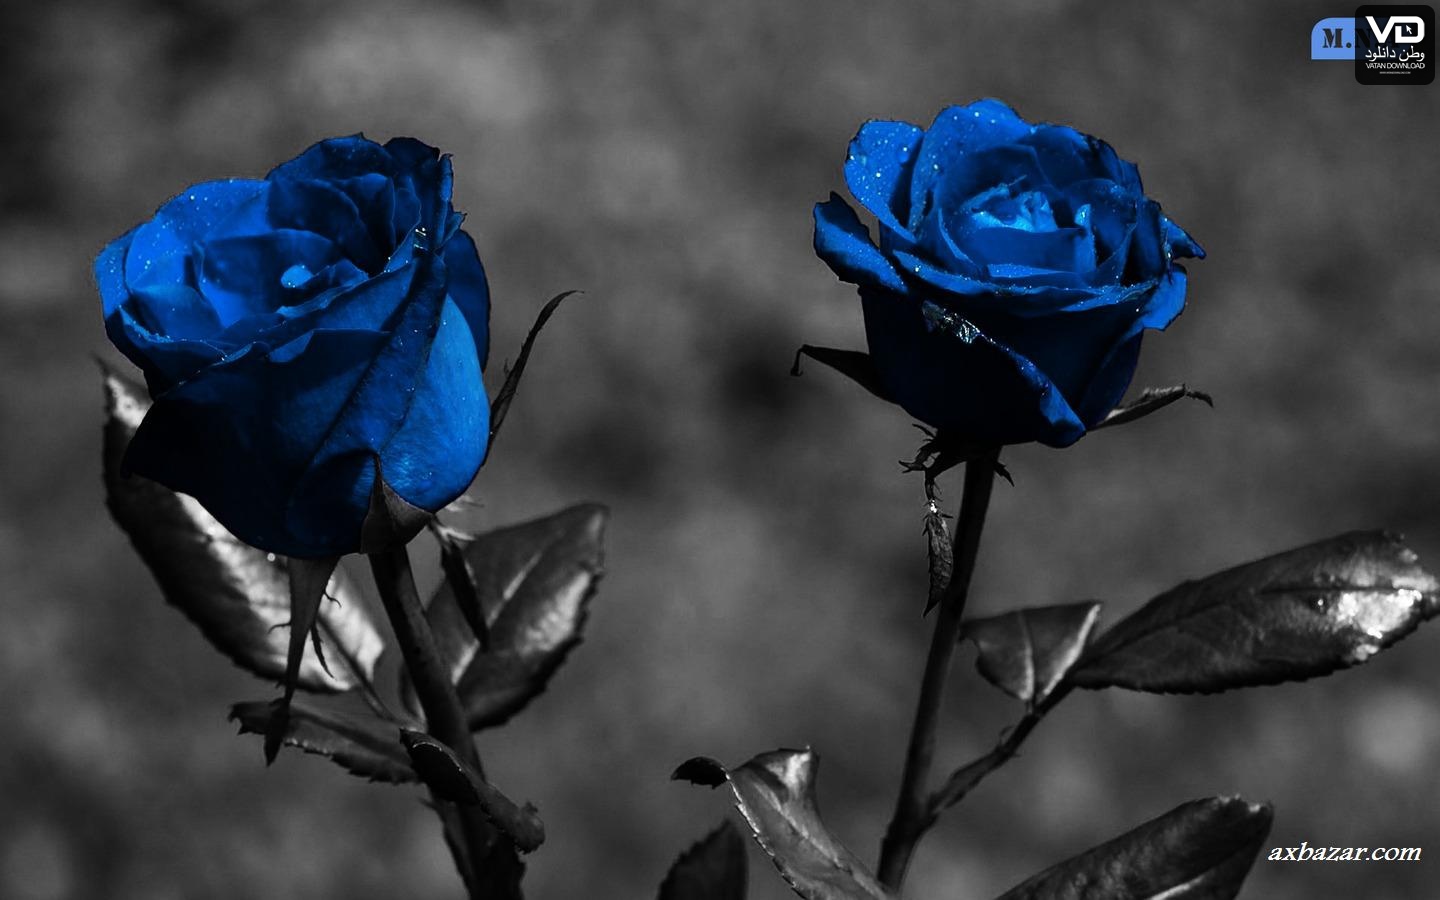 دانلود تصویر گل رز آبی